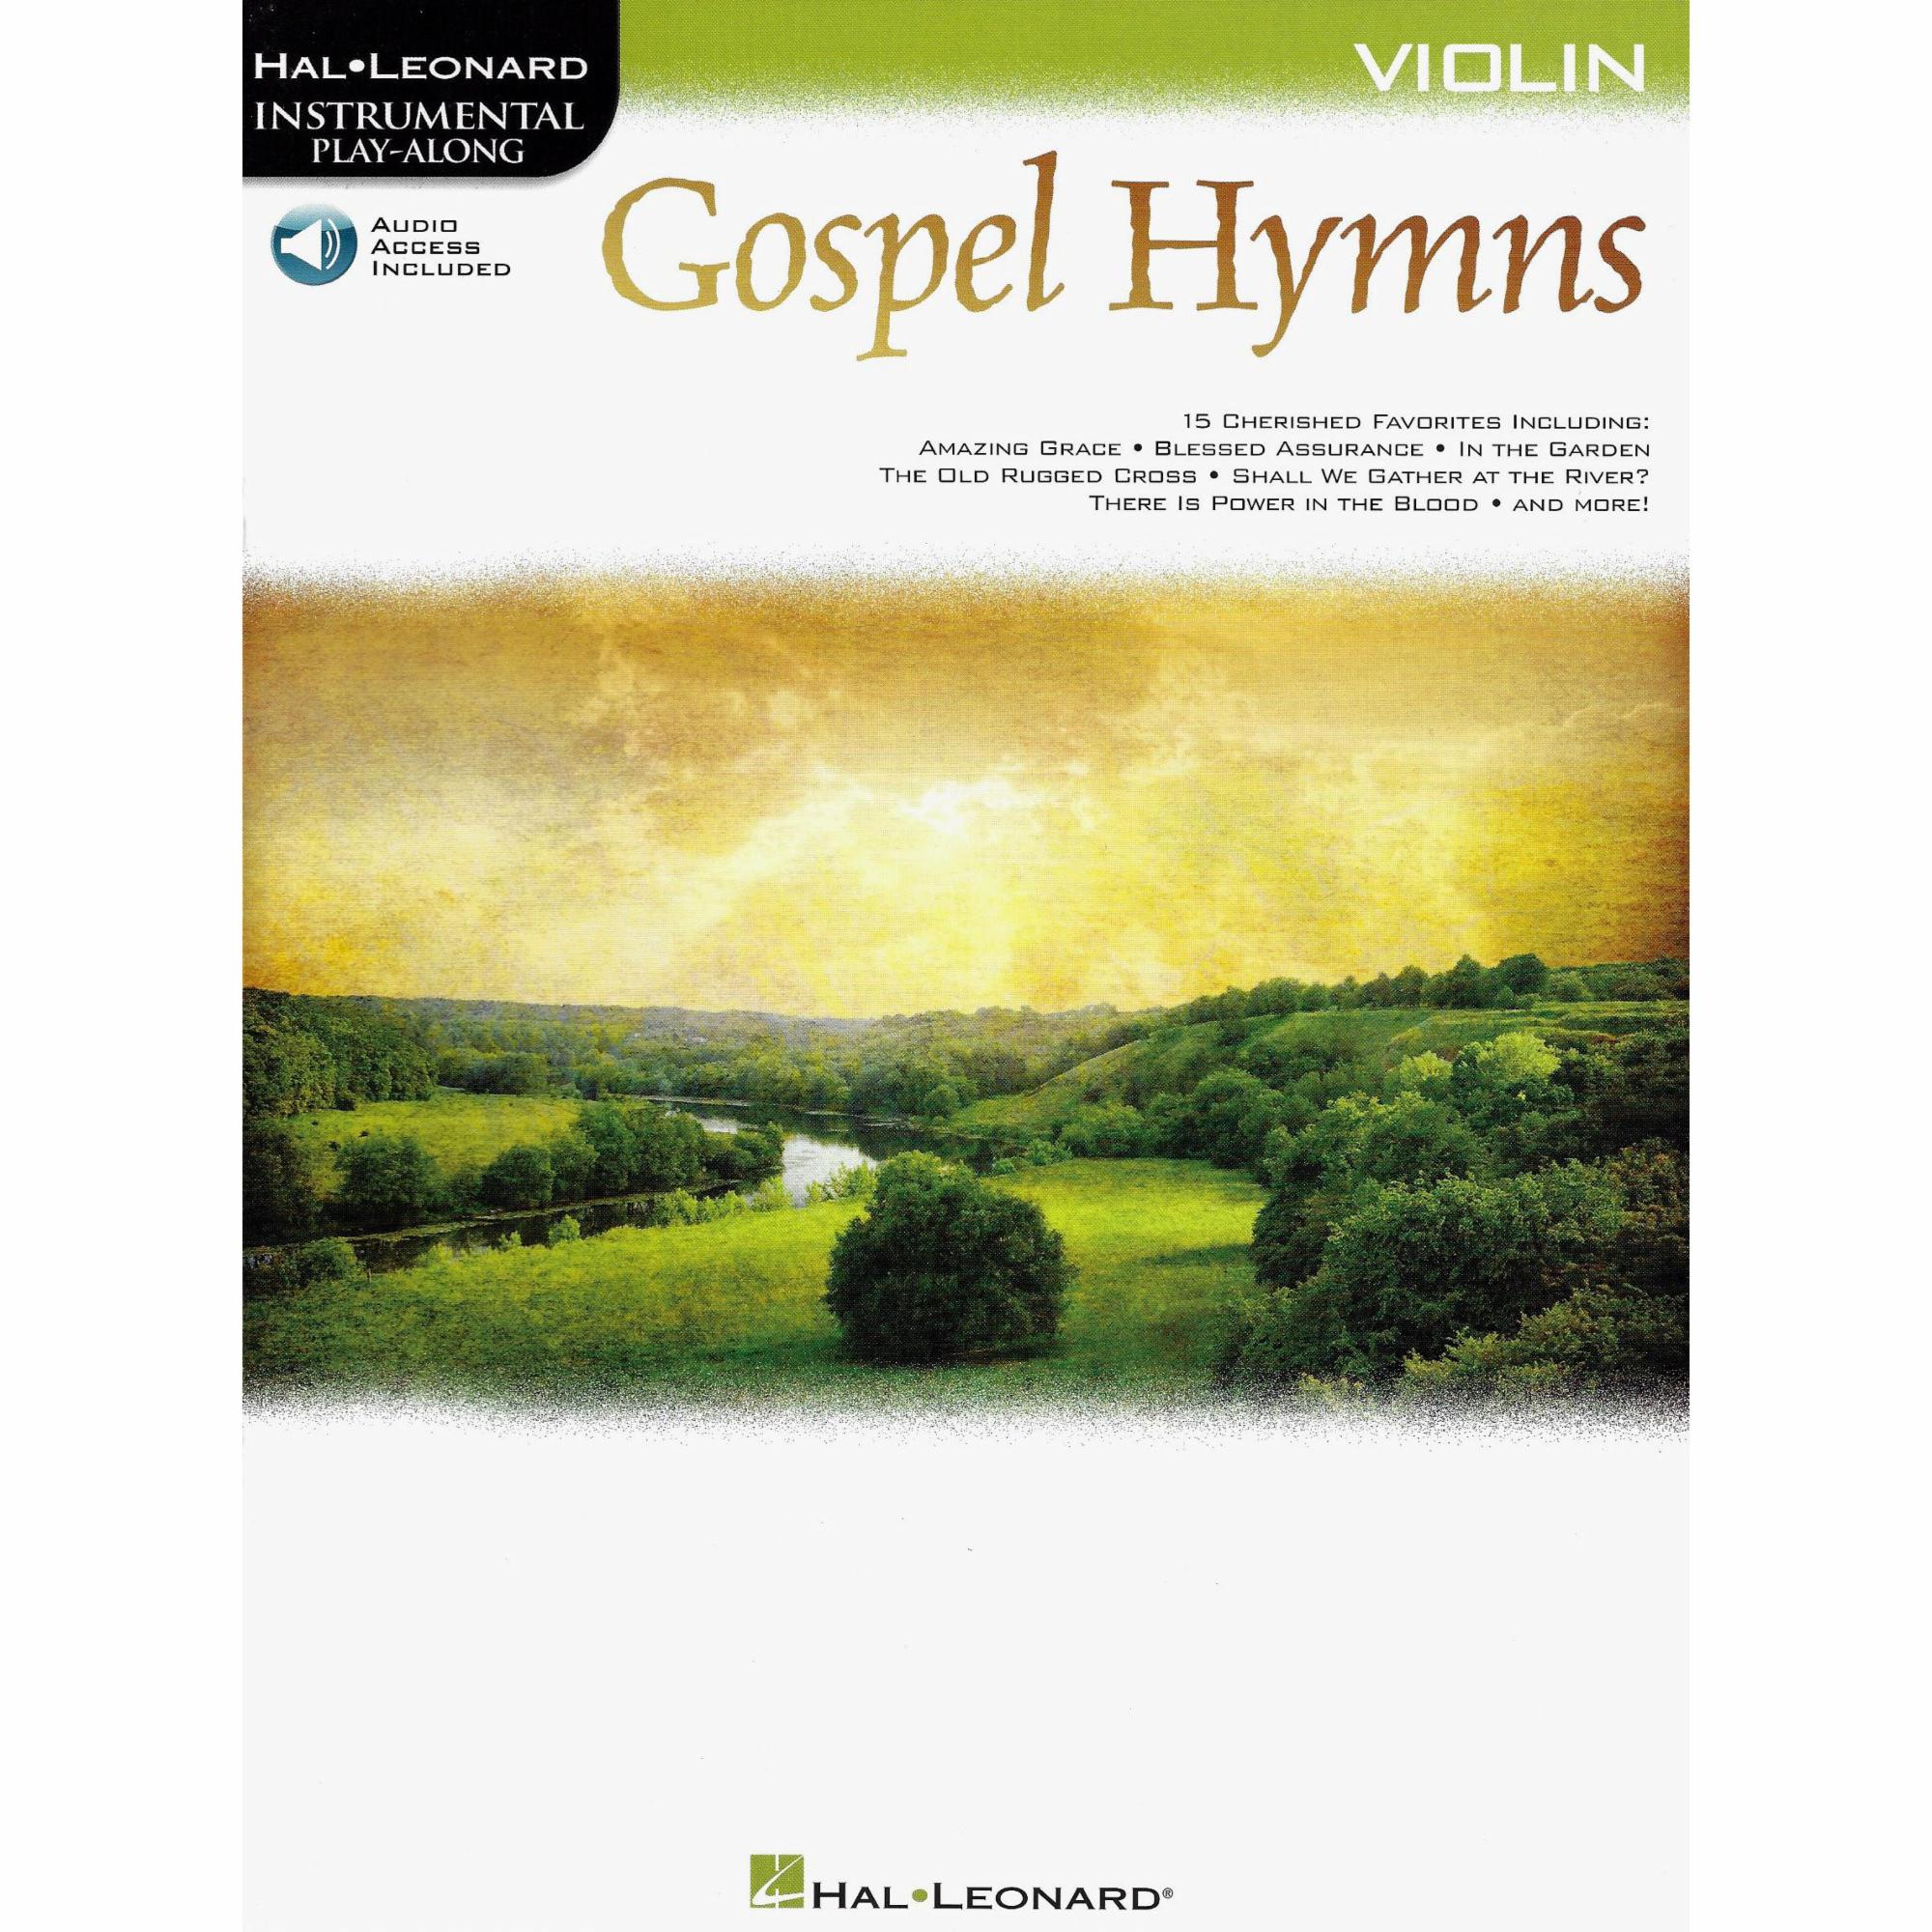 Gospel Hymns for Violin, Viola, or Cello